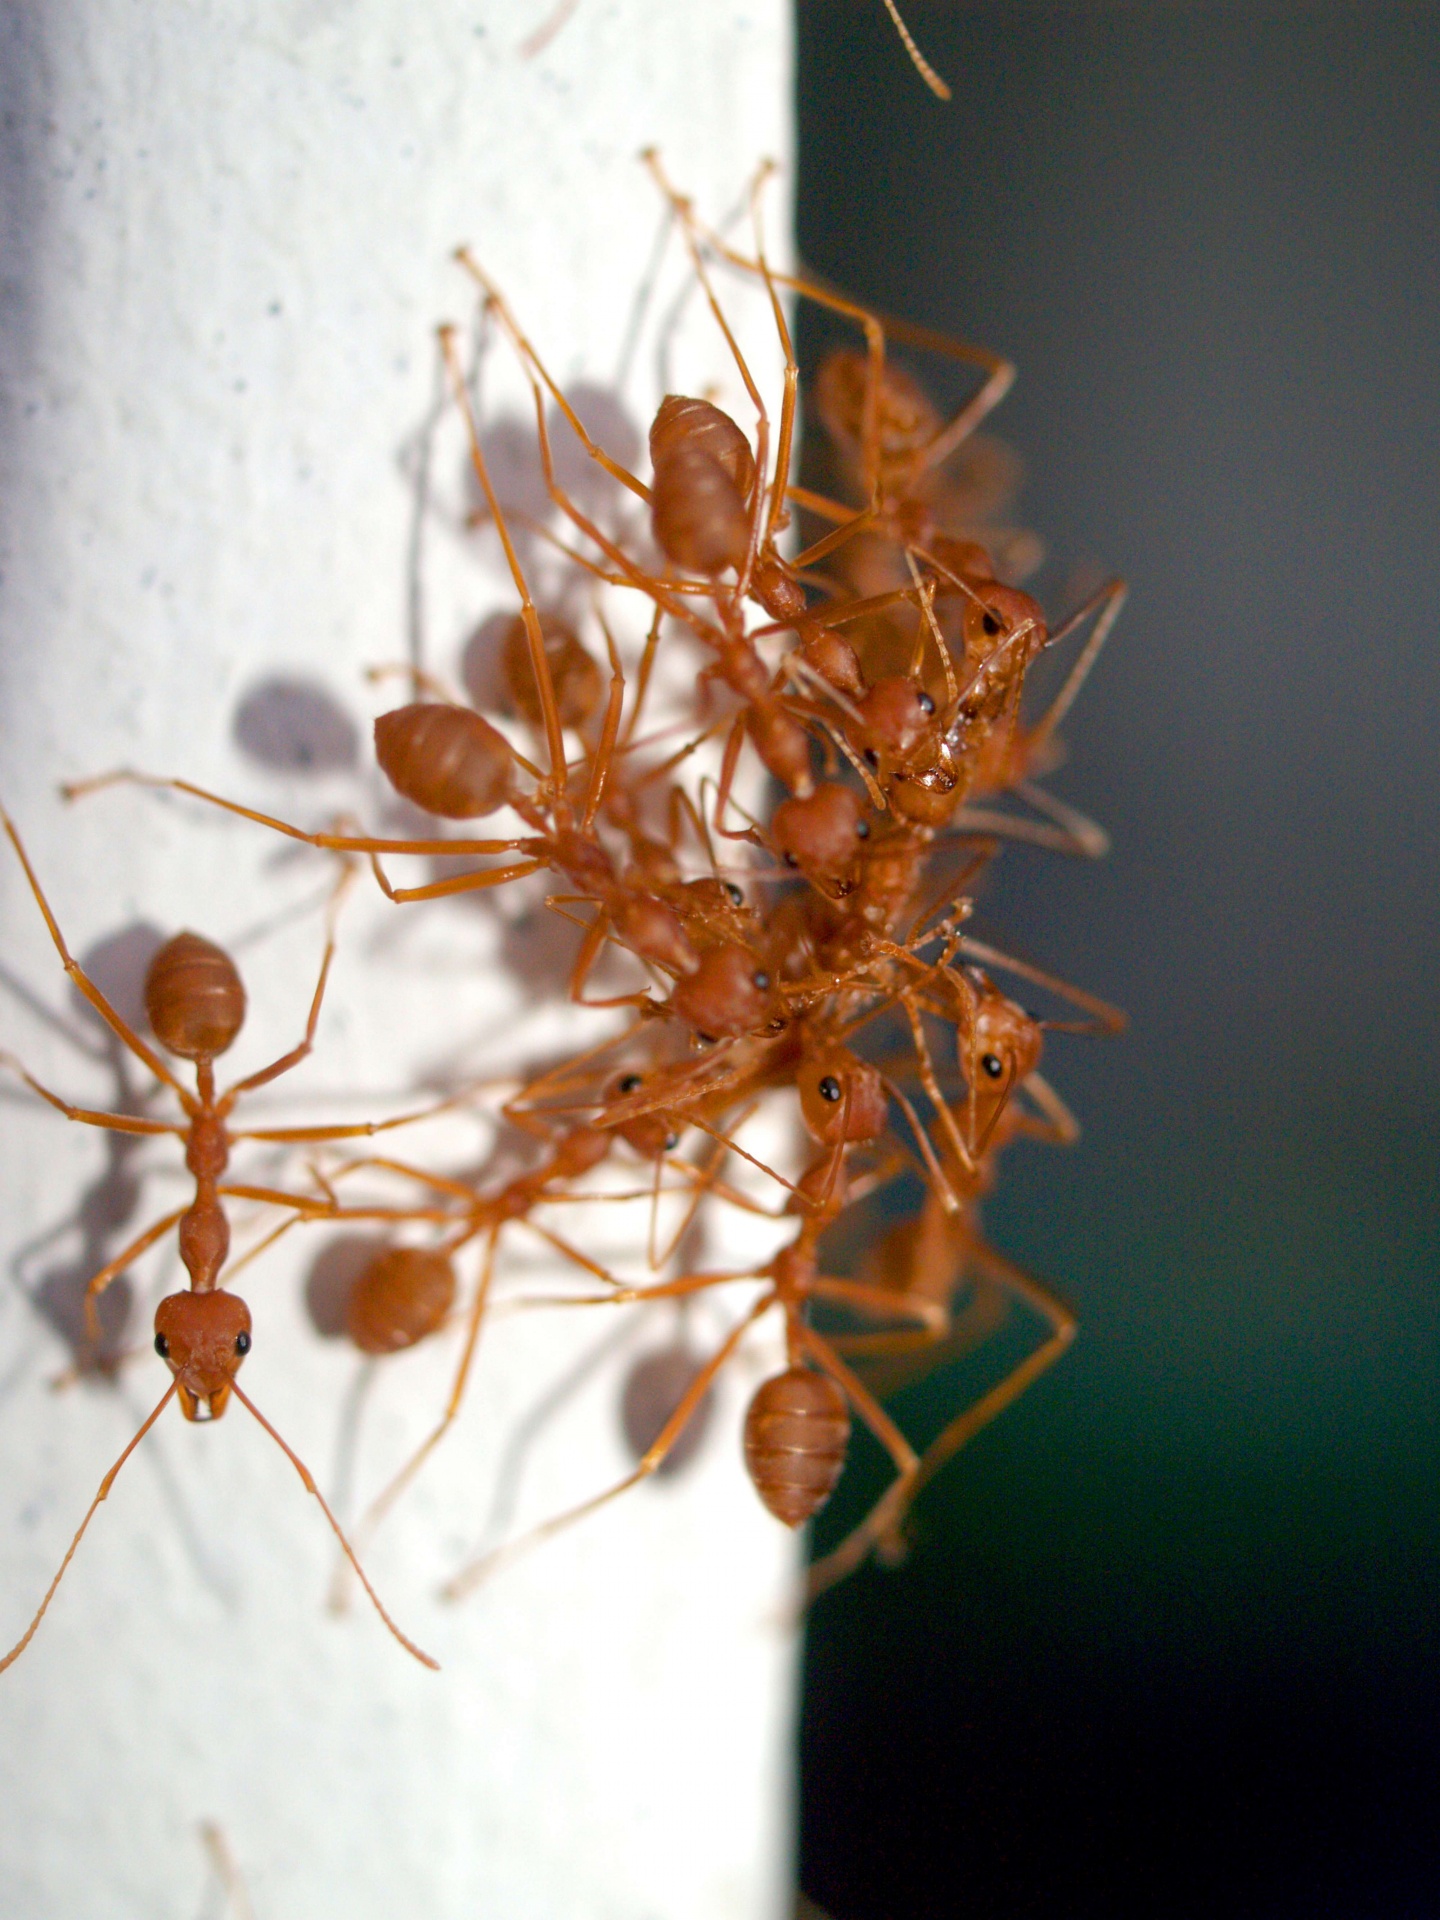 100+张最精彩的“Ant”图片 · 100%免费下载 · Pexels素材图片